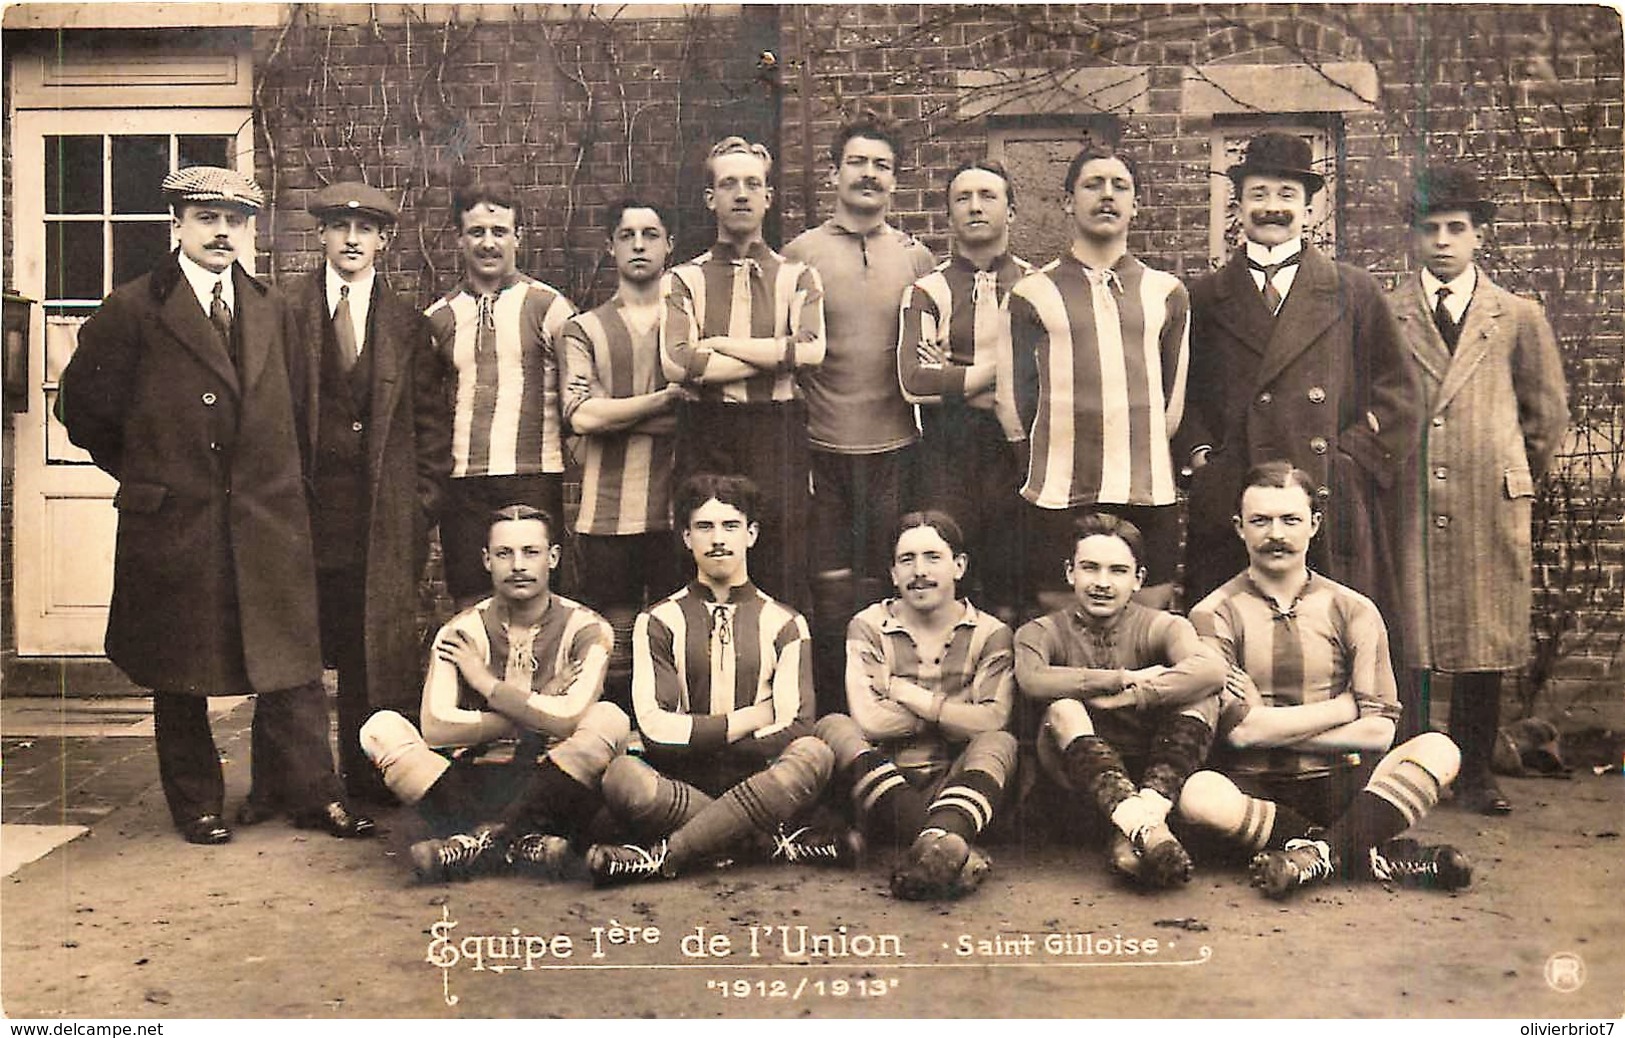 Bruxelles - St-Gilles - Equipe 1ere De L' Union St. Gilloise - 1912/1913 - Football - Un Trou De Punaise - St-Gillis - St-Gilles